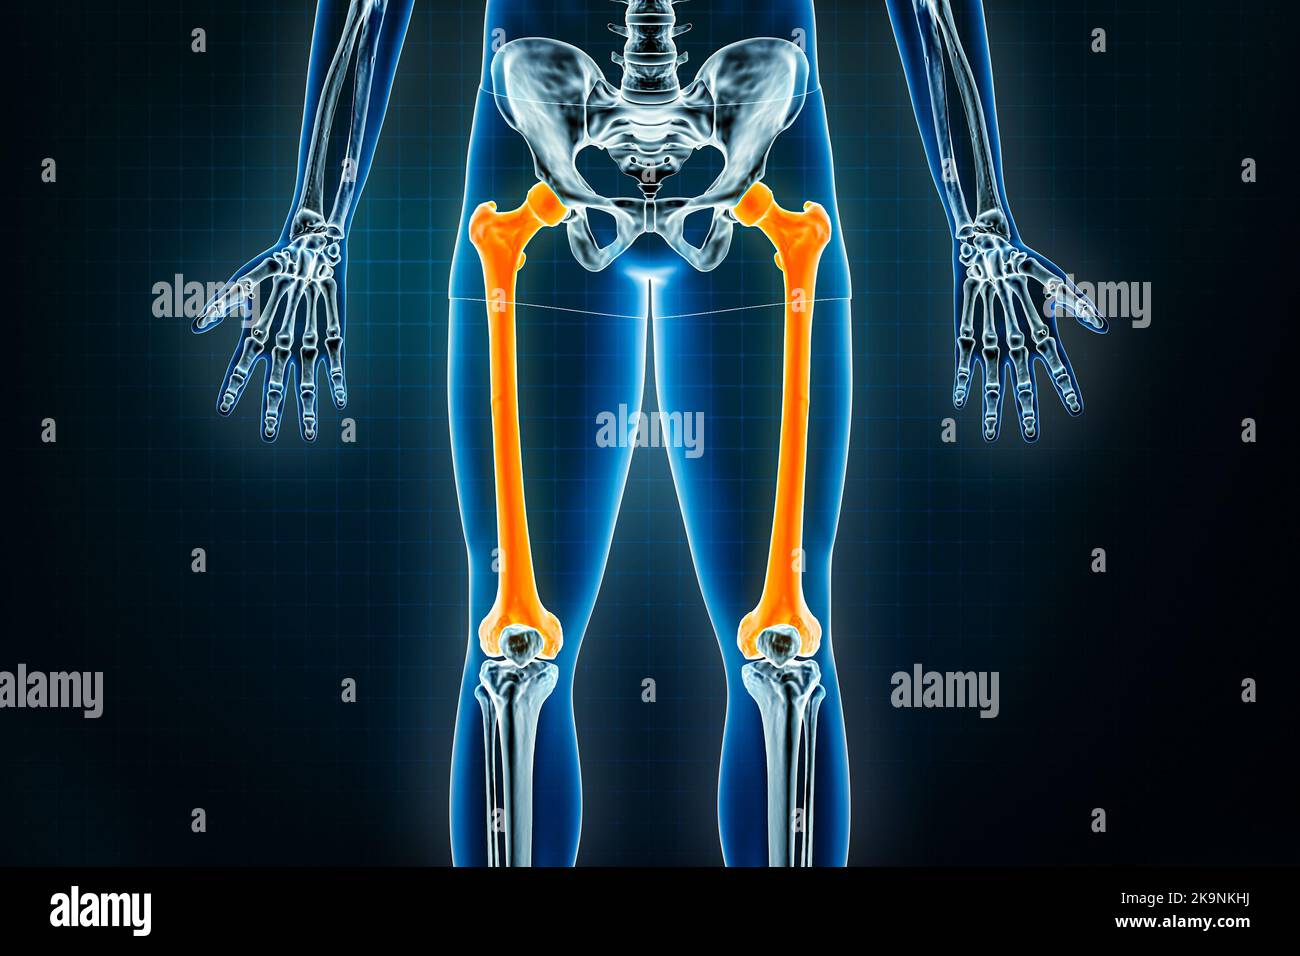 Vue frontale ou antérieure du fémur ou de l'os de la cuisse. Ostéologie du squelette humain, des os de la jambe ou du membre inférieur 3D illustration du rendu. Anatomie, médical Banque D'Images